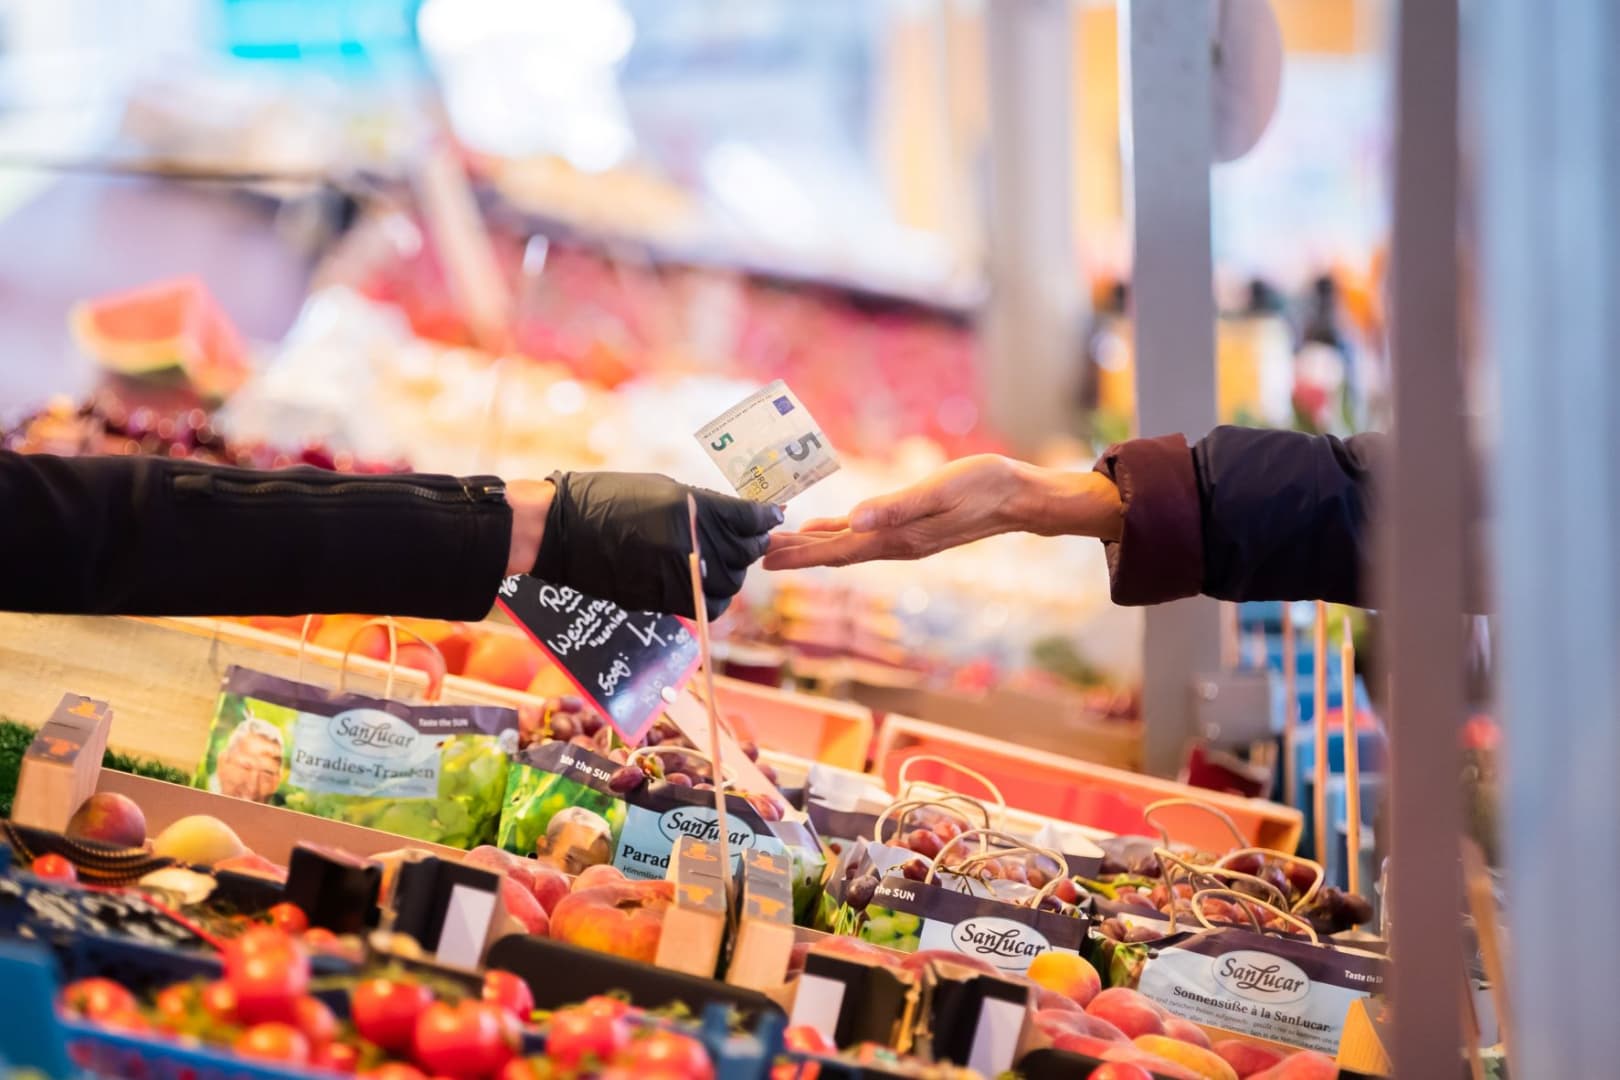 Februárban újra csúcsra ugrott az infláció, az élelmiszerárak emelkedése nem akar megállni